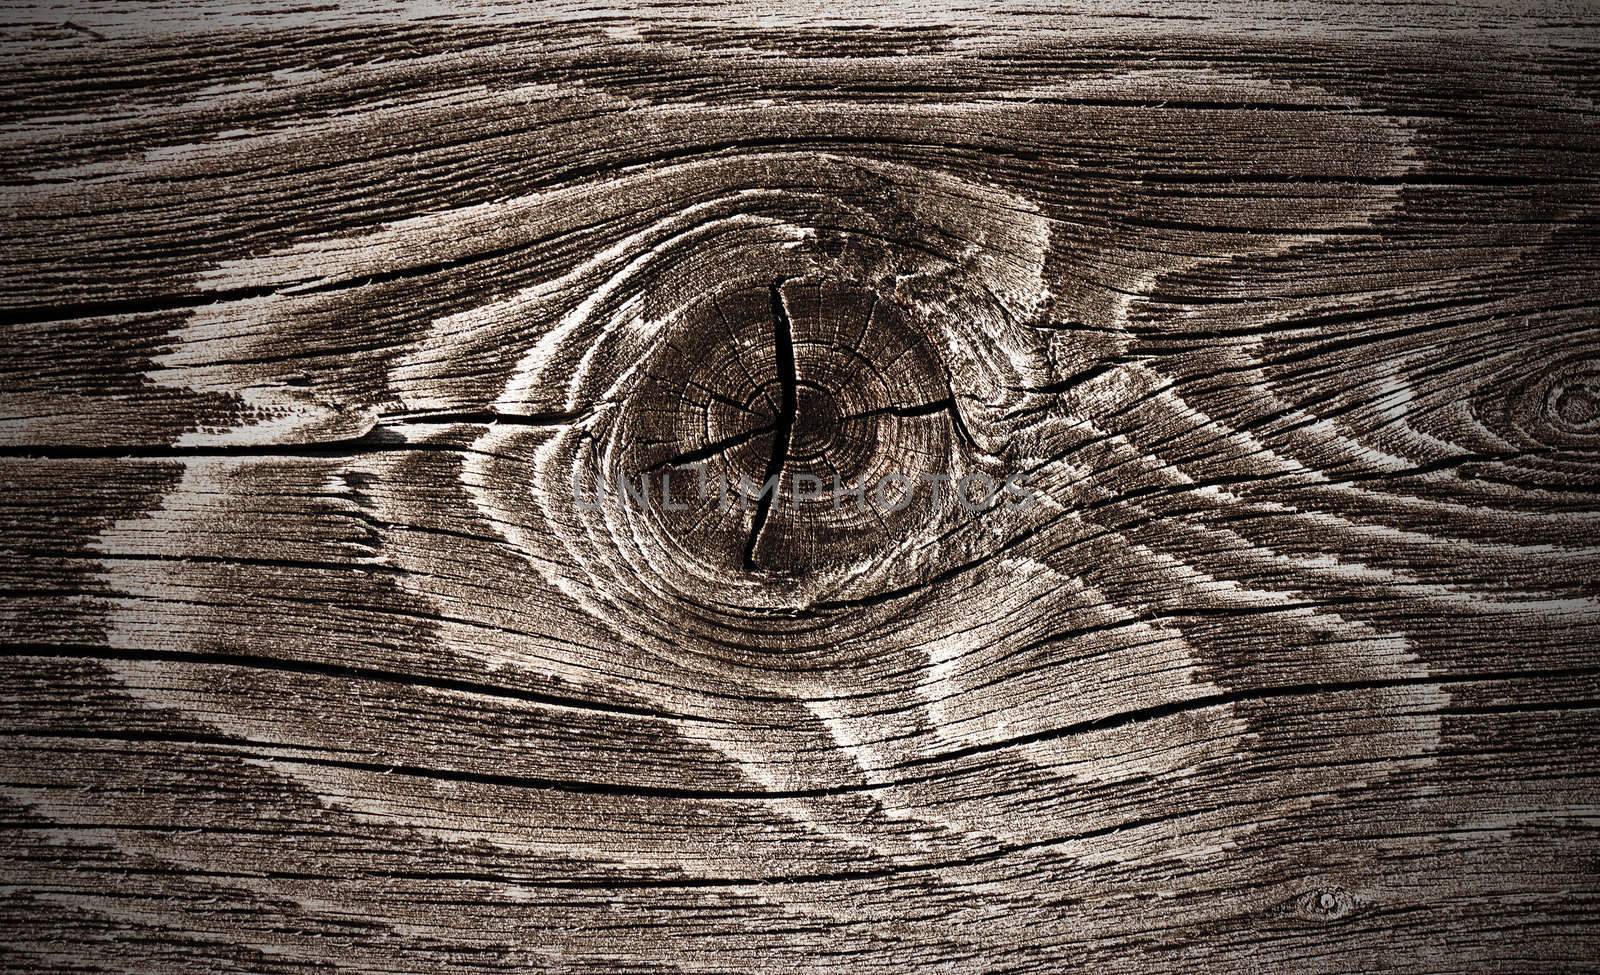 Macro view of wood knot stylized
